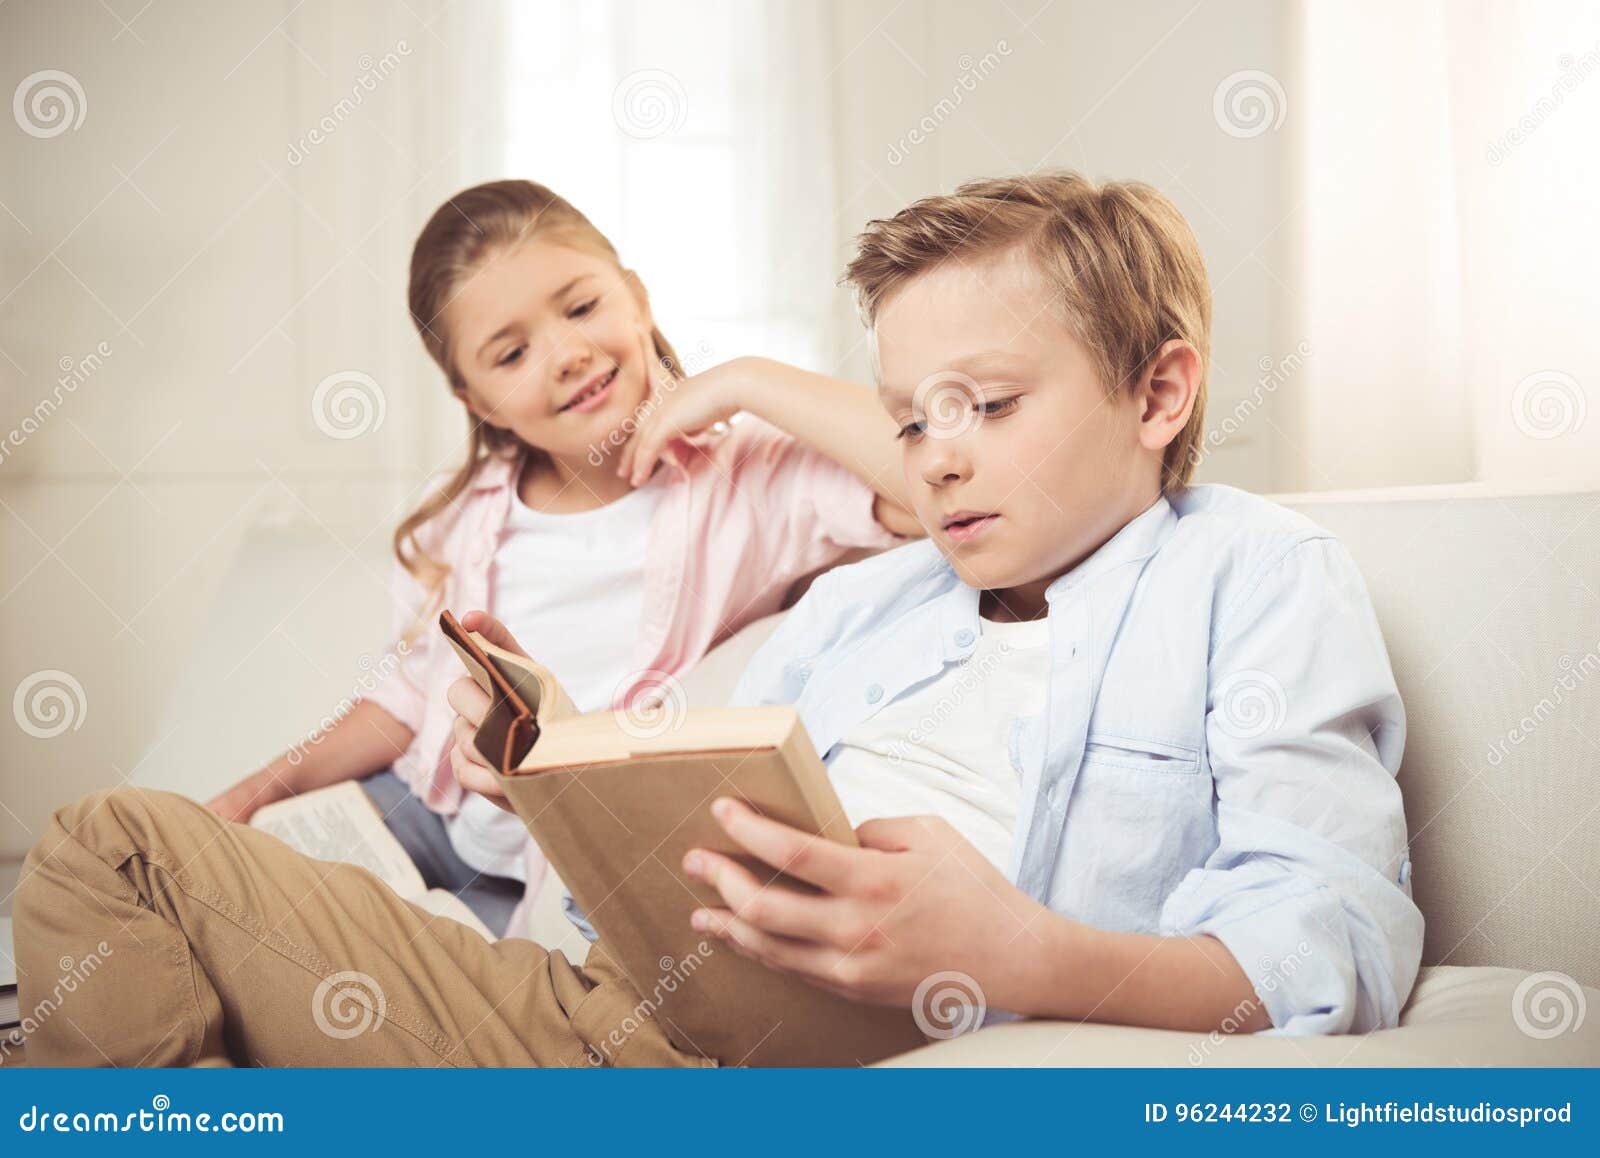 Читал с сестрой читал с ней. Братья и сёстры книга. Чтение книг брата с сестрой. Брат читает книгу сестре. Сестры читают книжку.